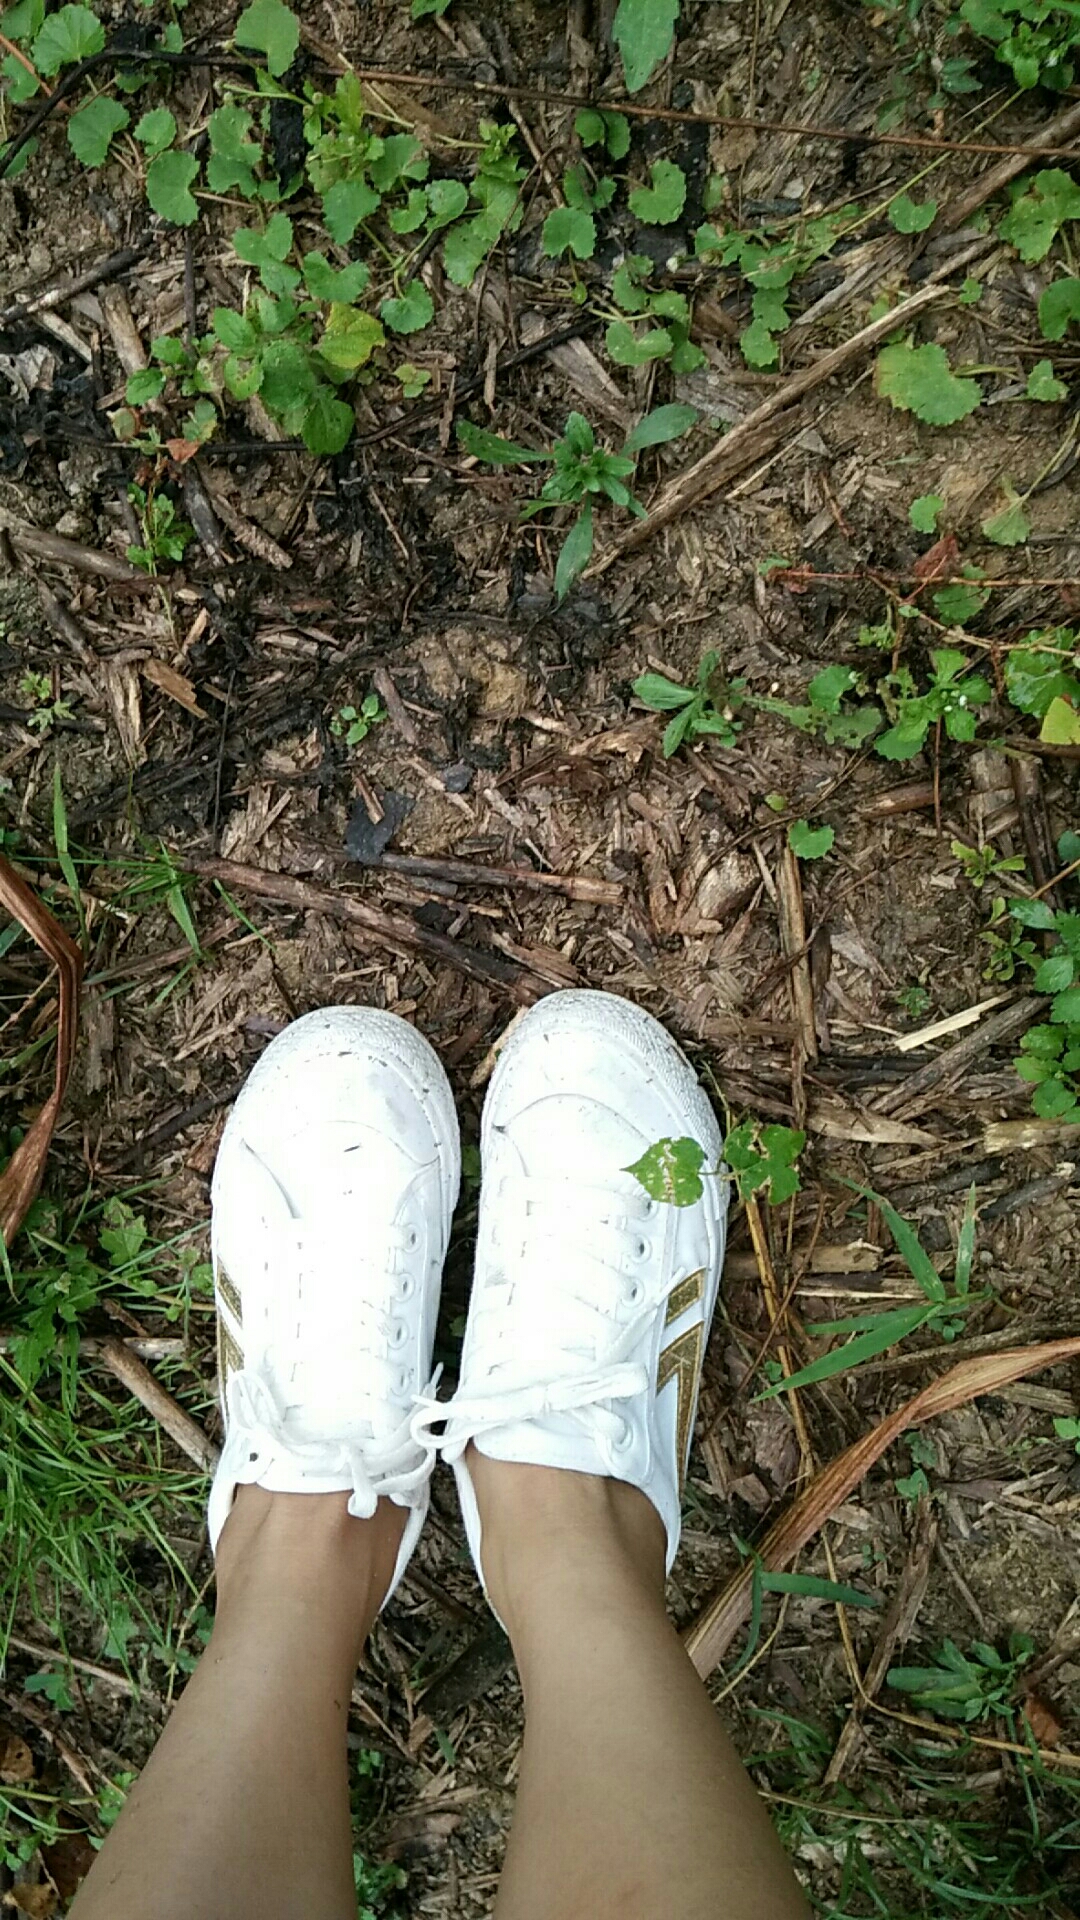 穿着小白鞋走进果园啦啦啦,瞬间成了泥巴鞋.